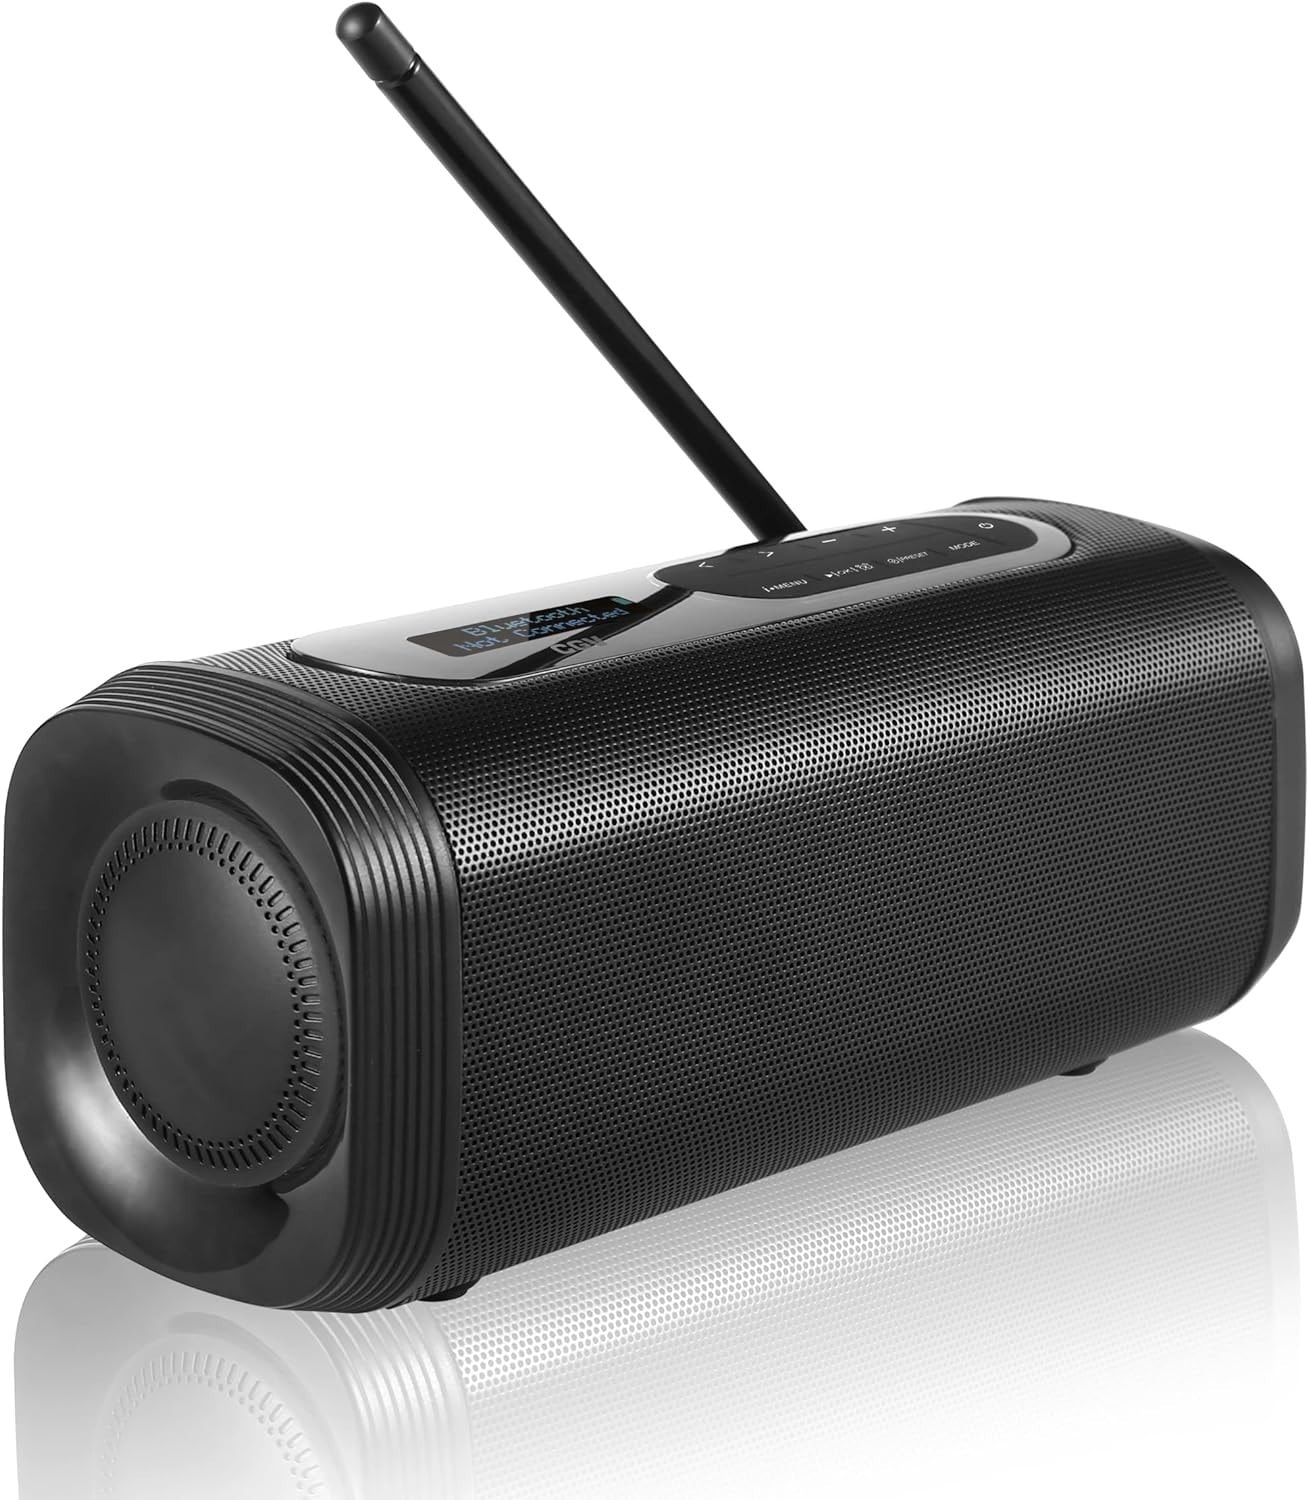 Enceinte Bluetooth portable avec radio DAB/FM - Noir JBL : l